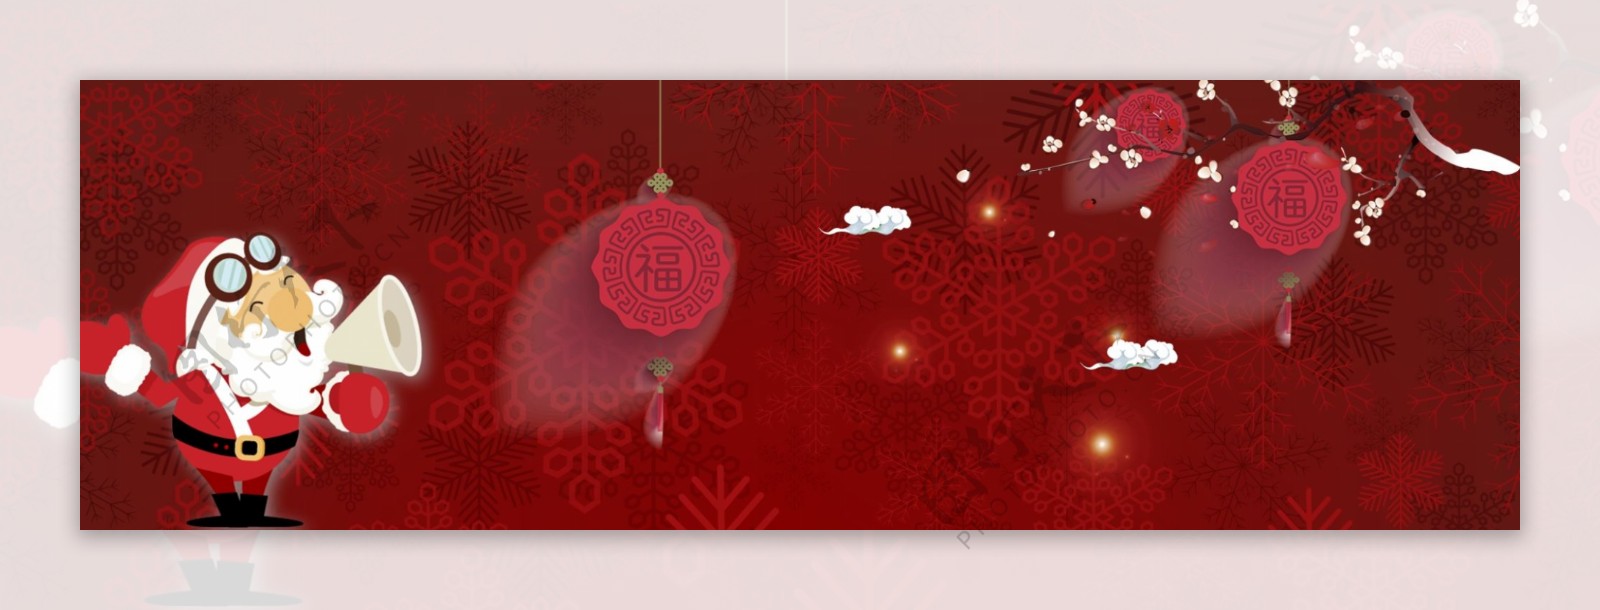 西方节日卡通圣诞节banner背景